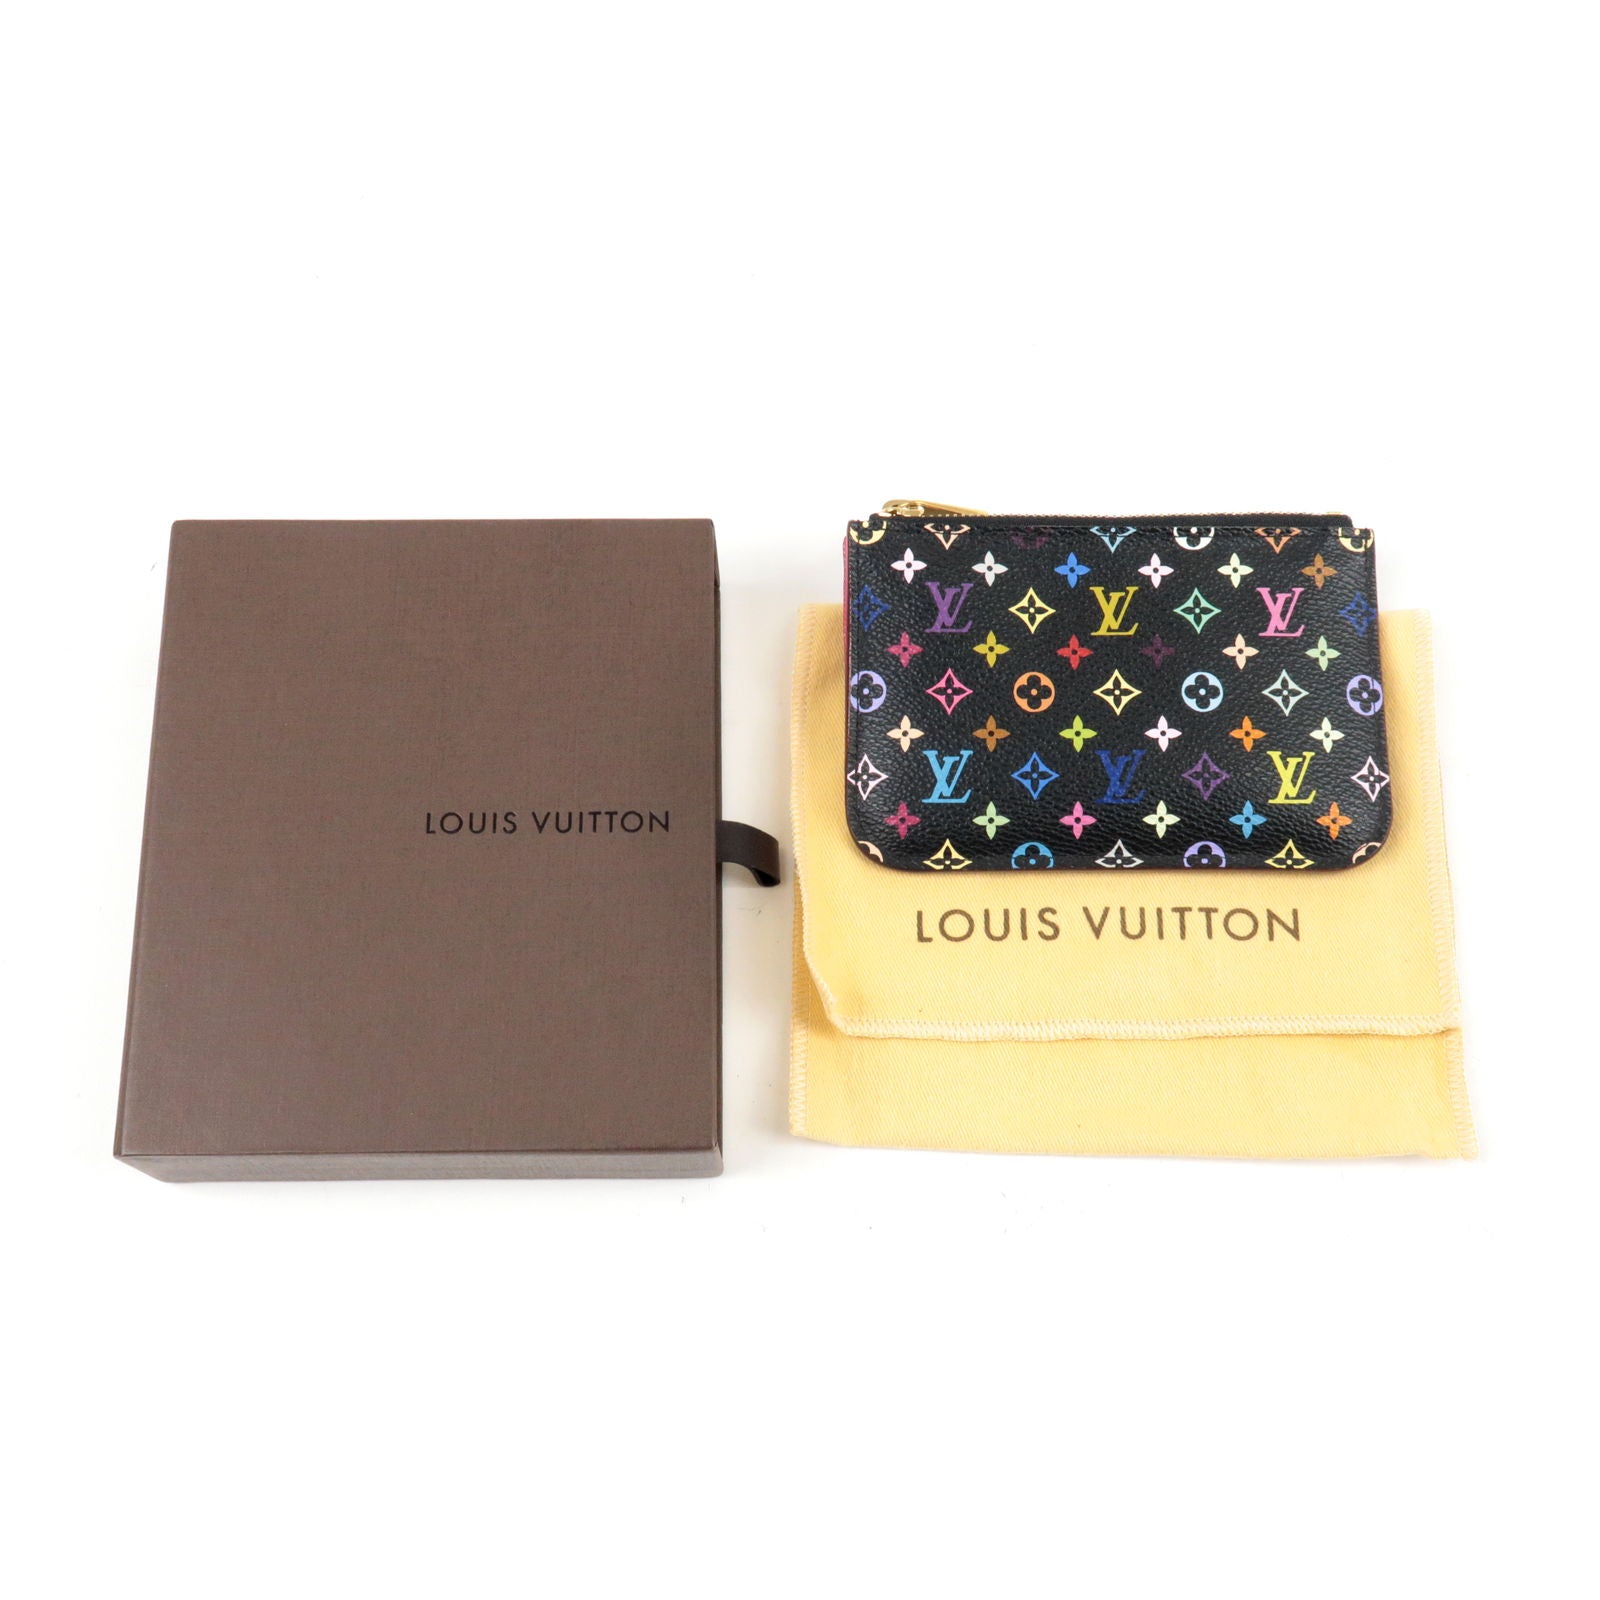 LOUIS VUITTON Monogram Multicolor Cosmetic Pouch Black Grenade